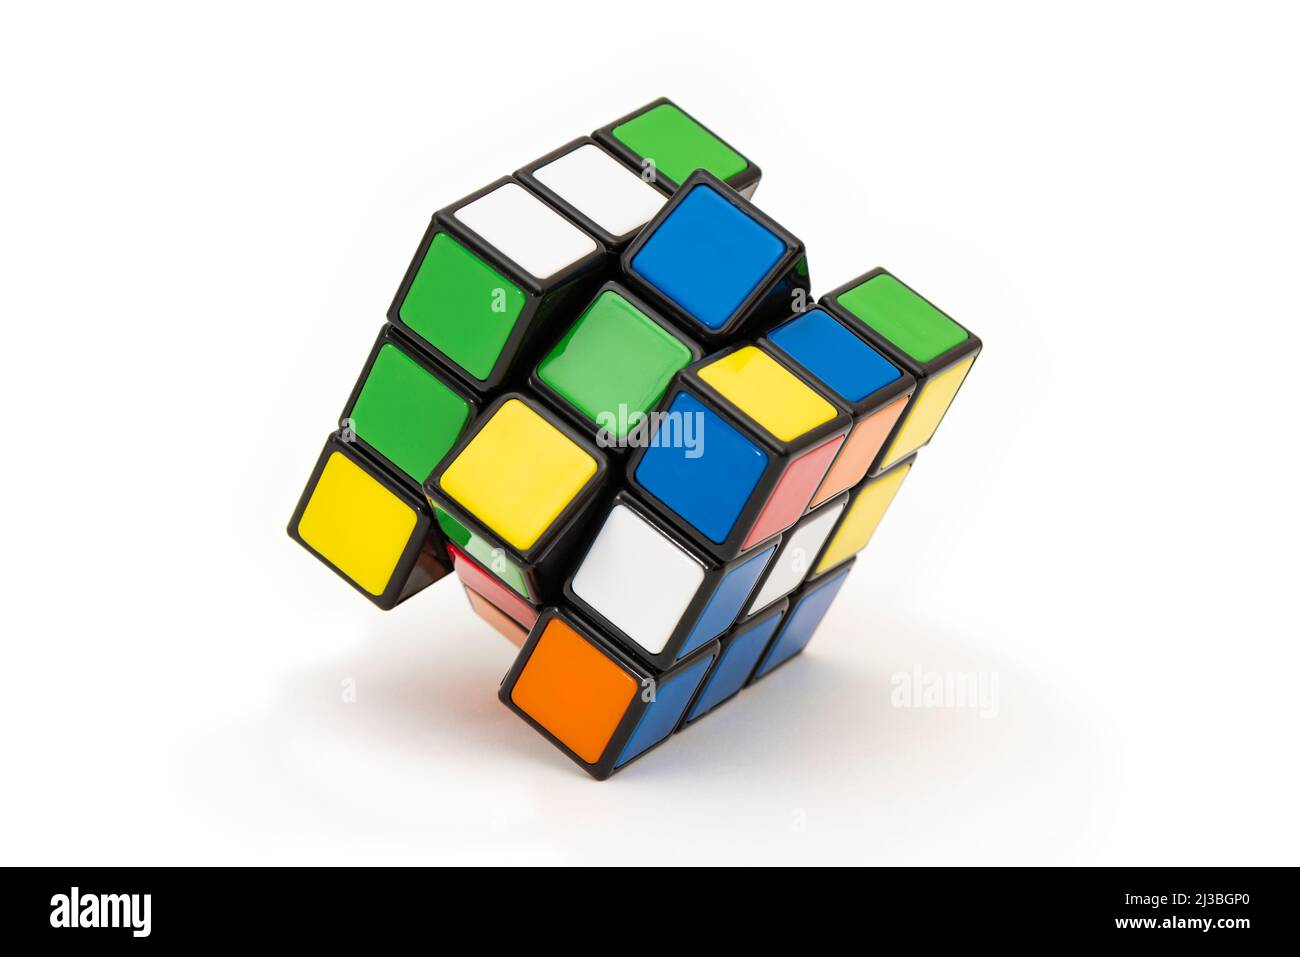 ISTANBUL- TÜRKEI - 24. DEZEMBER 2021: Rubik's Cube auf weißem Hintergrund. Rubik's Cube auf weißem Hintergrund. Rubik's Cube erfunden von einem ungarischen A Stockfoto